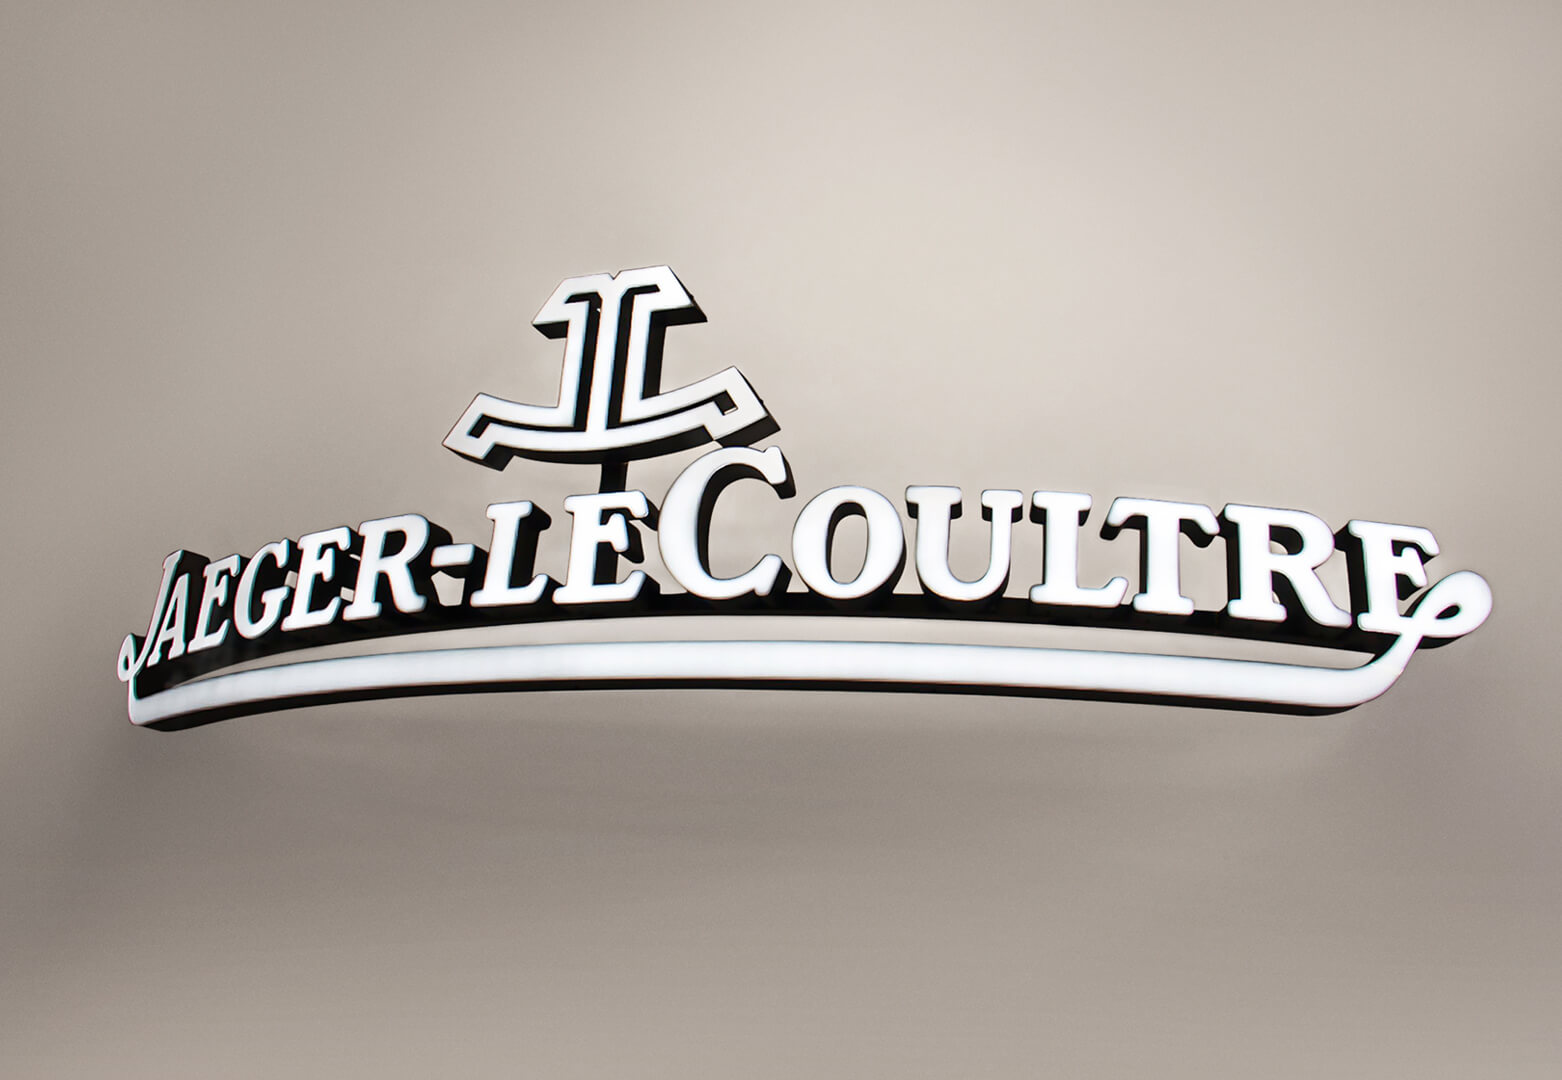 Jaeger-LeCoultre - logotipo arqueado, frontal iluminado en blanco